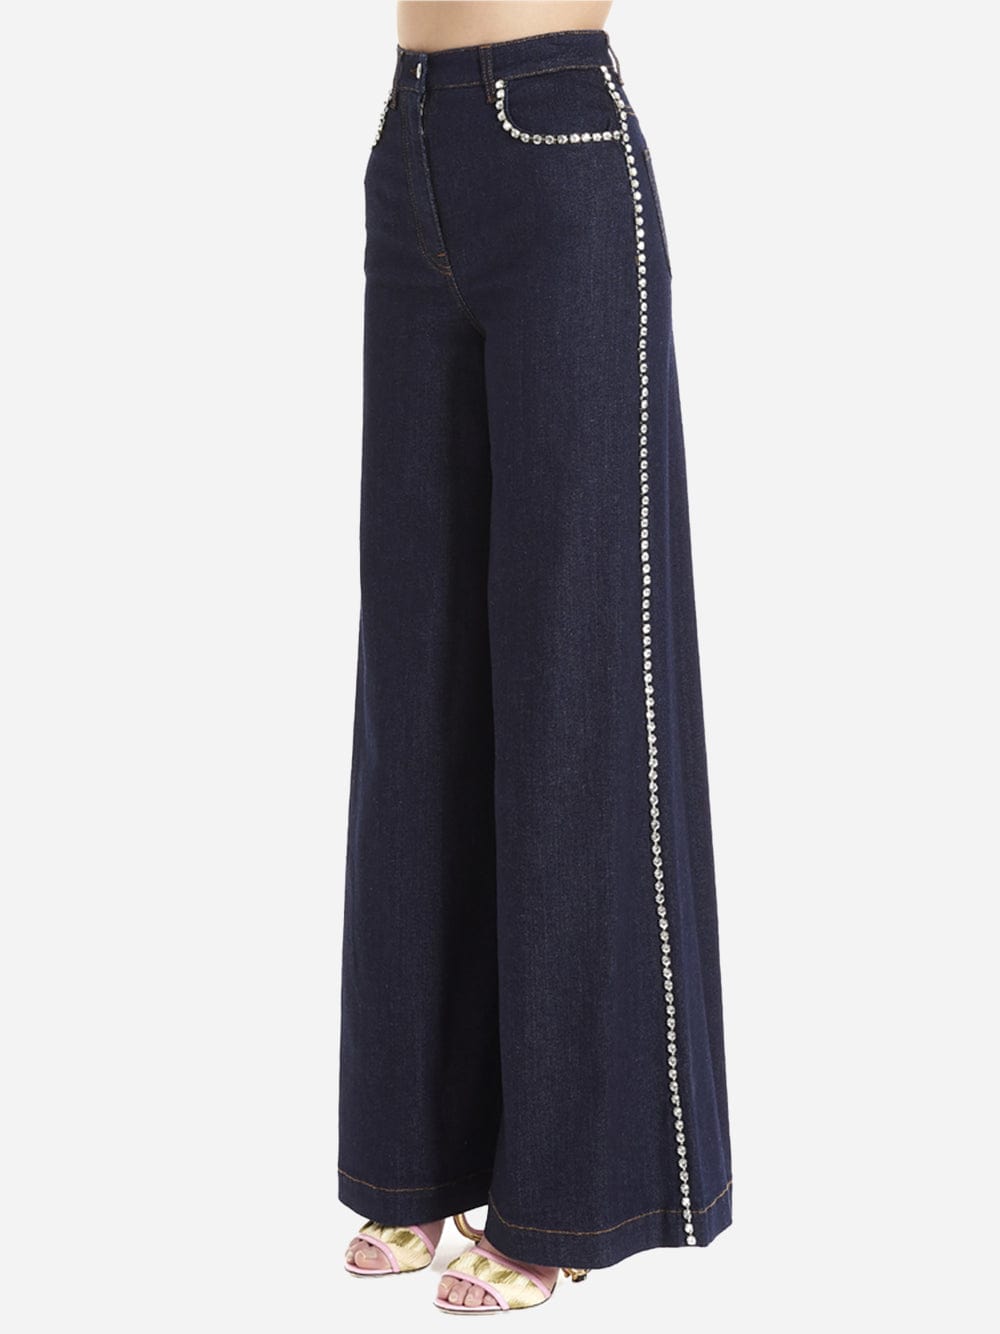 Dolce & Gabbana Crystal-Embellished Flared Jeans